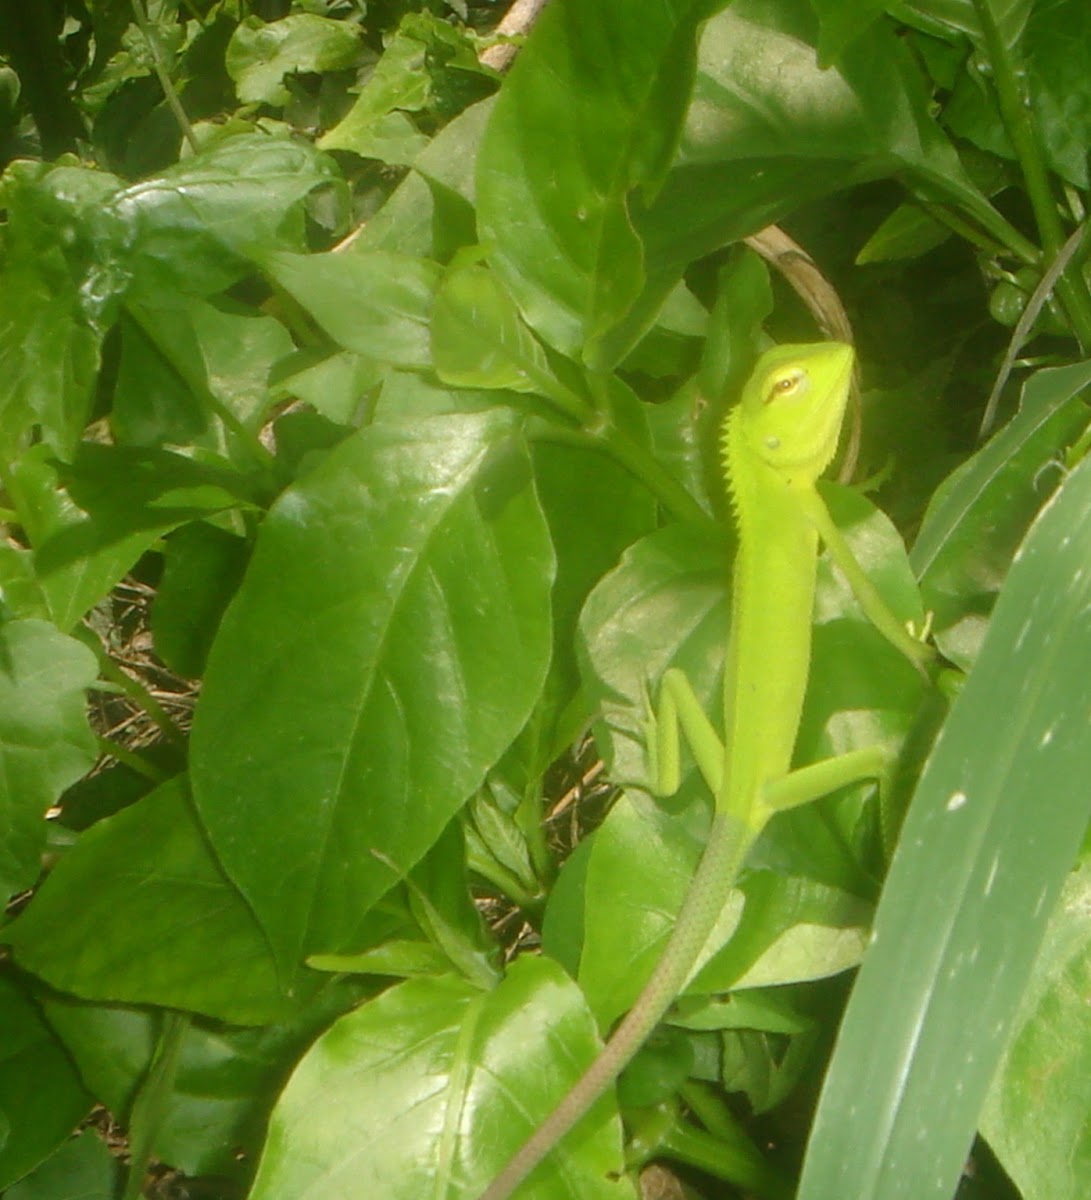 Common green garden lizard